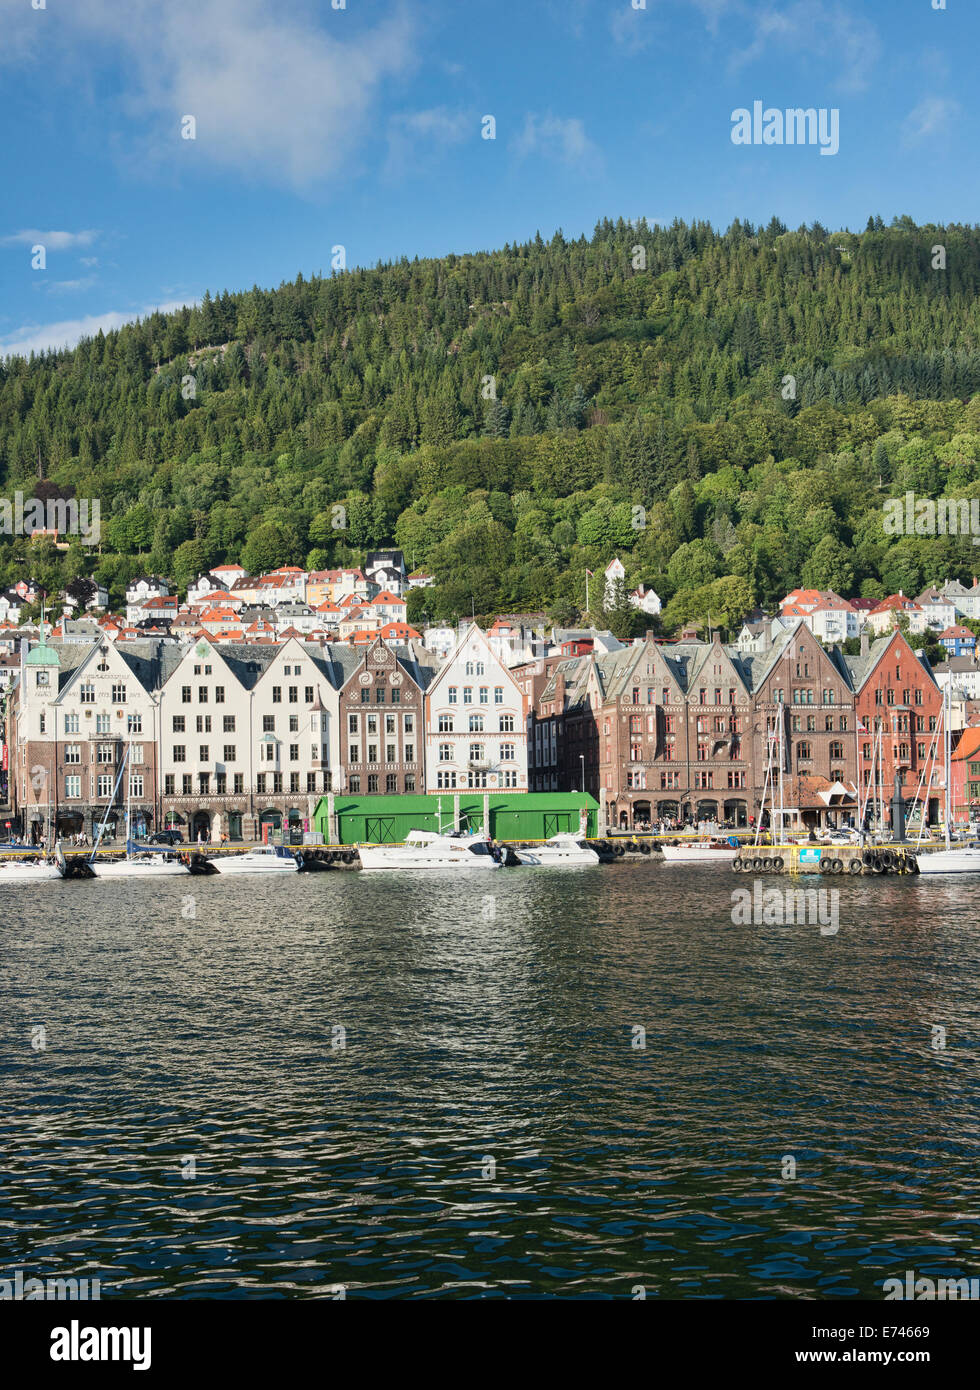 The old Bryggen harbor, Bergen, Norway Stock Photo